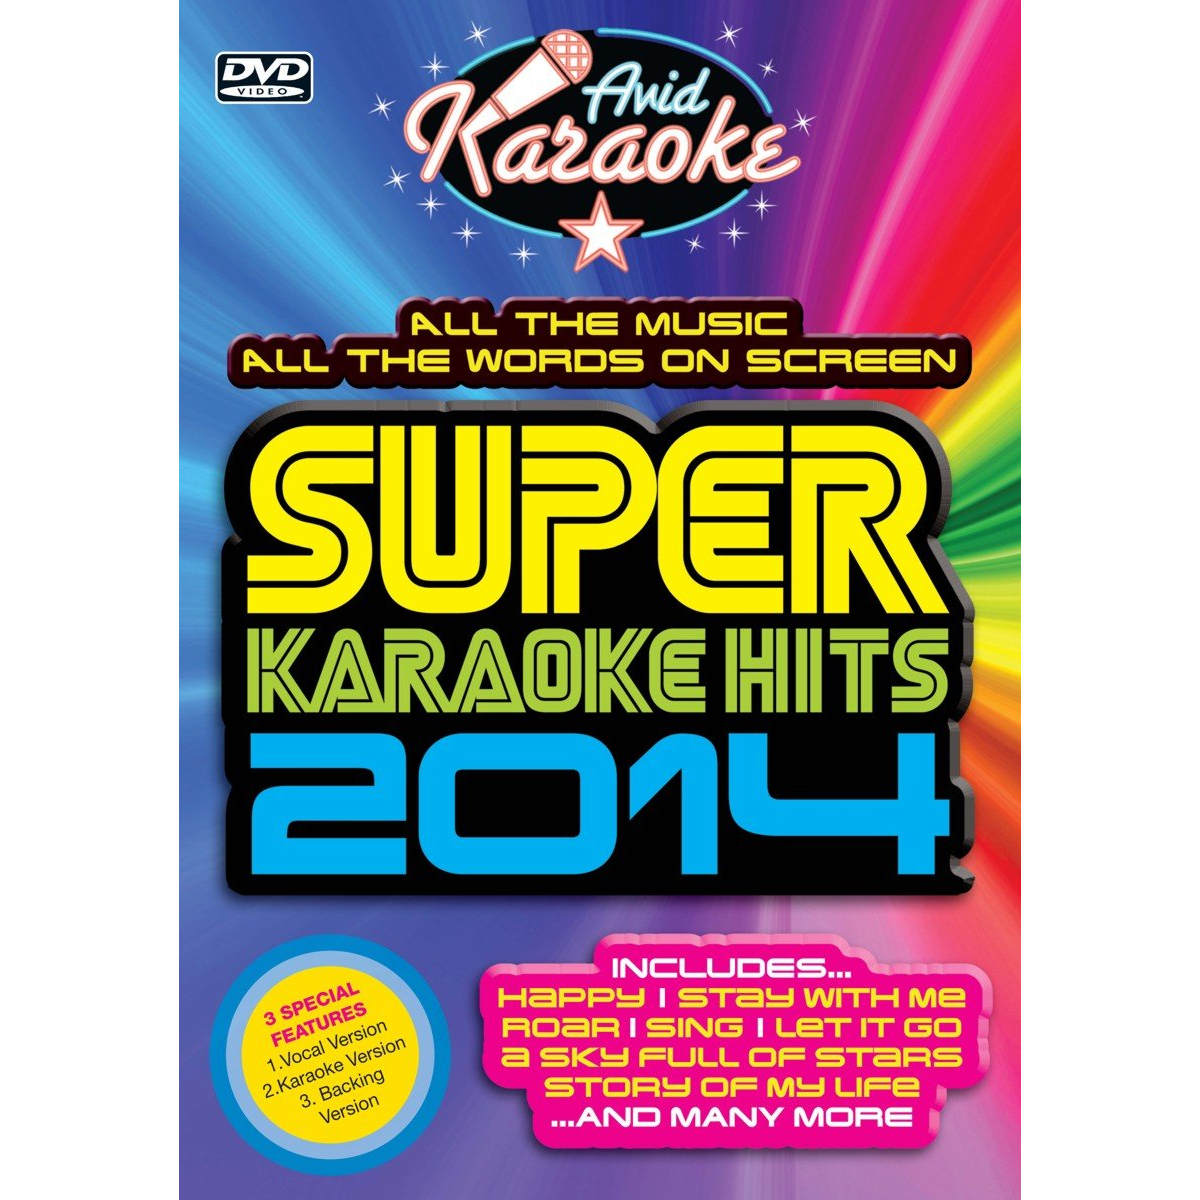 SUPER KARAOKE HITS 2014